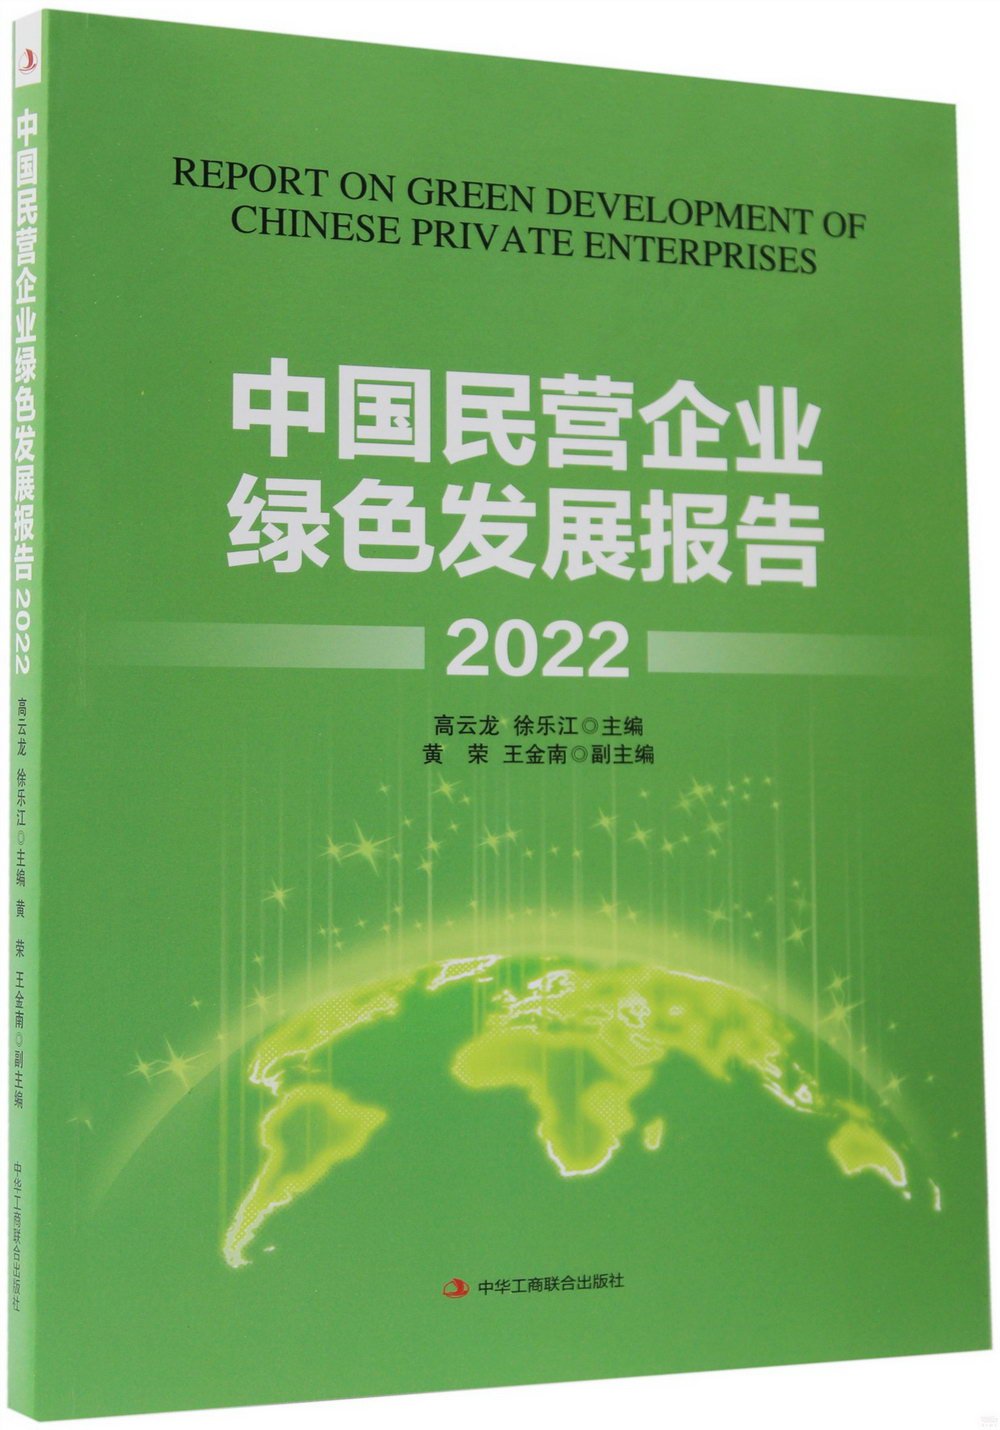 中國民營企業綠色發展報告2022